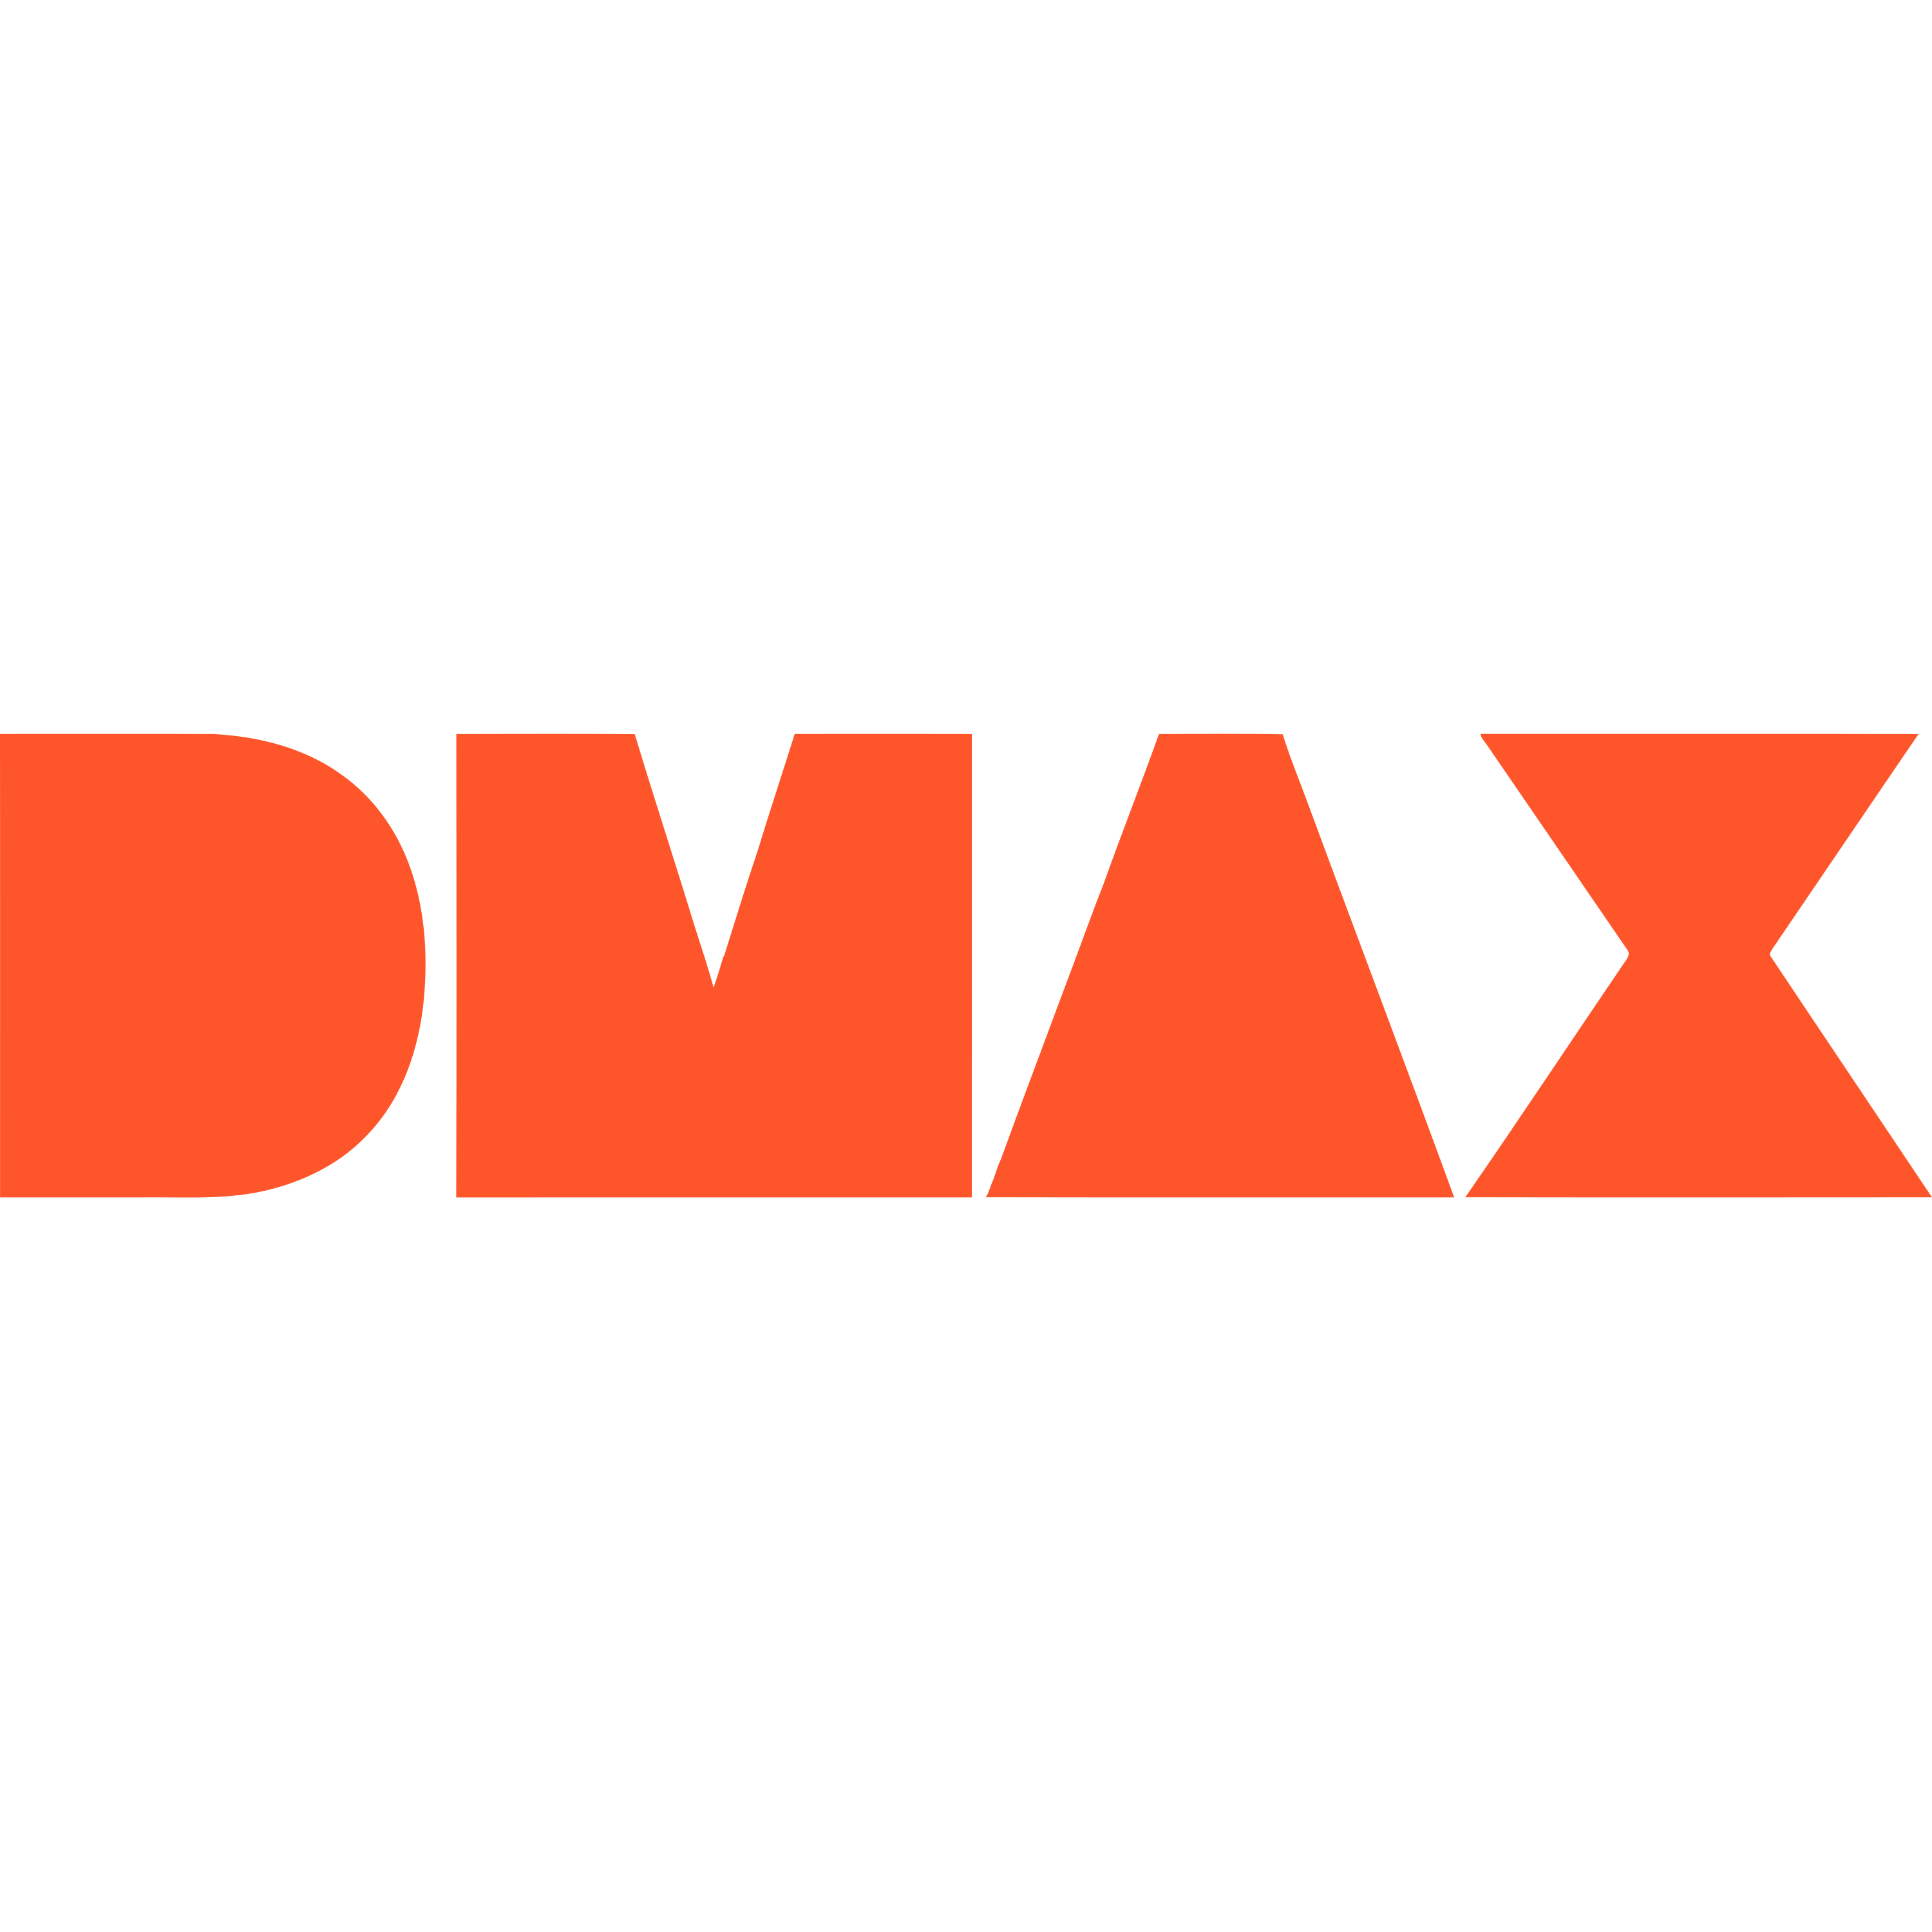 DMAX Spain Logo  Transparent Image